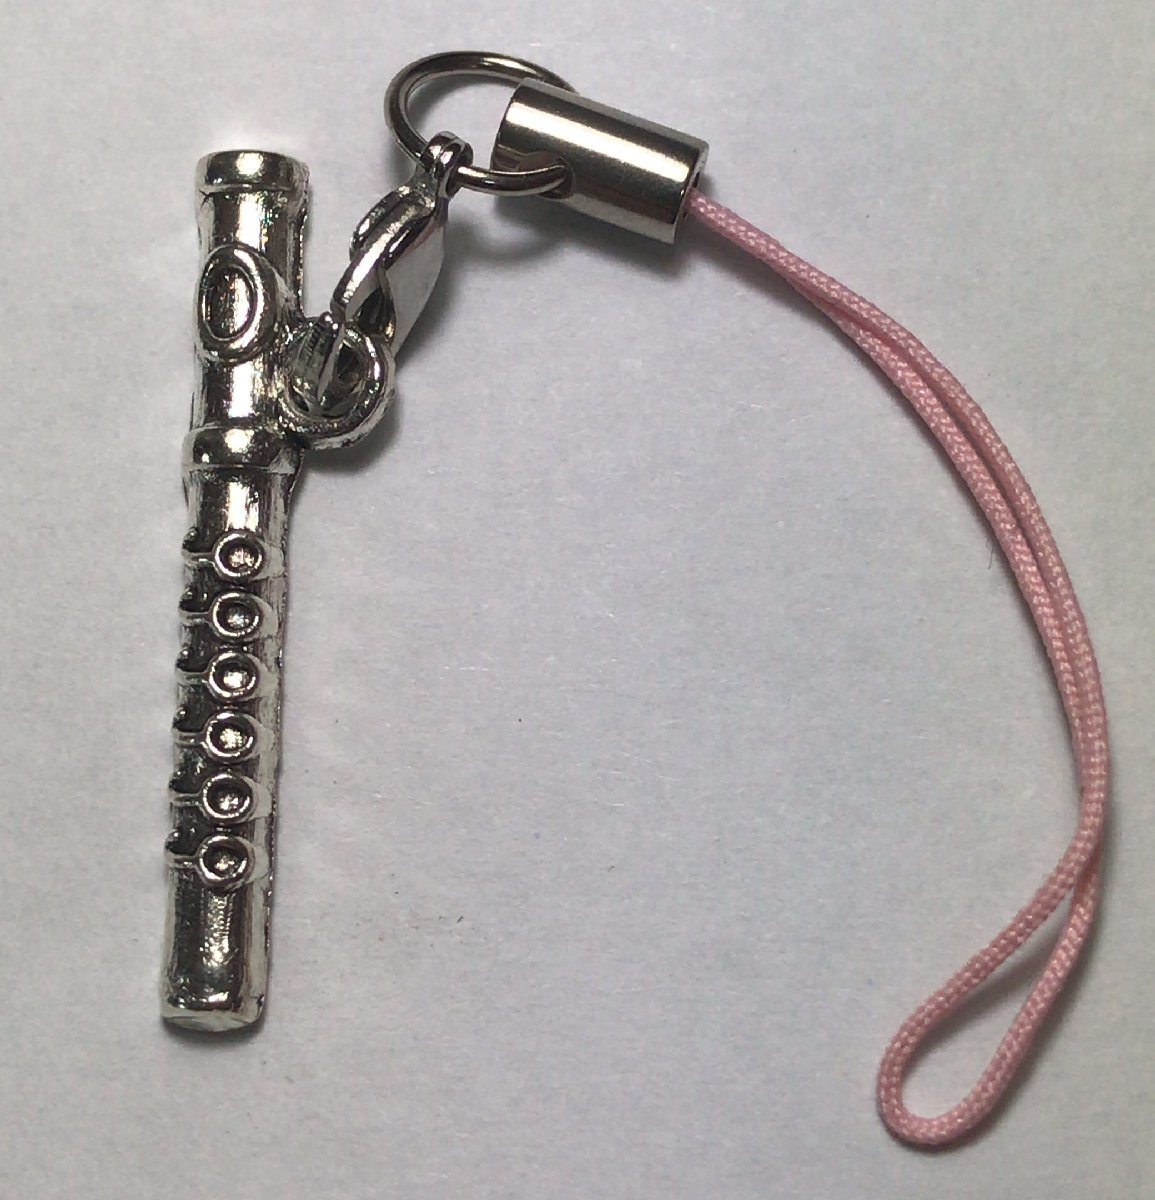  флейта   музыка   золото   труба   музыкальный инструмент   сюжет    ключ  держатель   сотовый  ремень   аксессуары   модный  　   ... хороший 